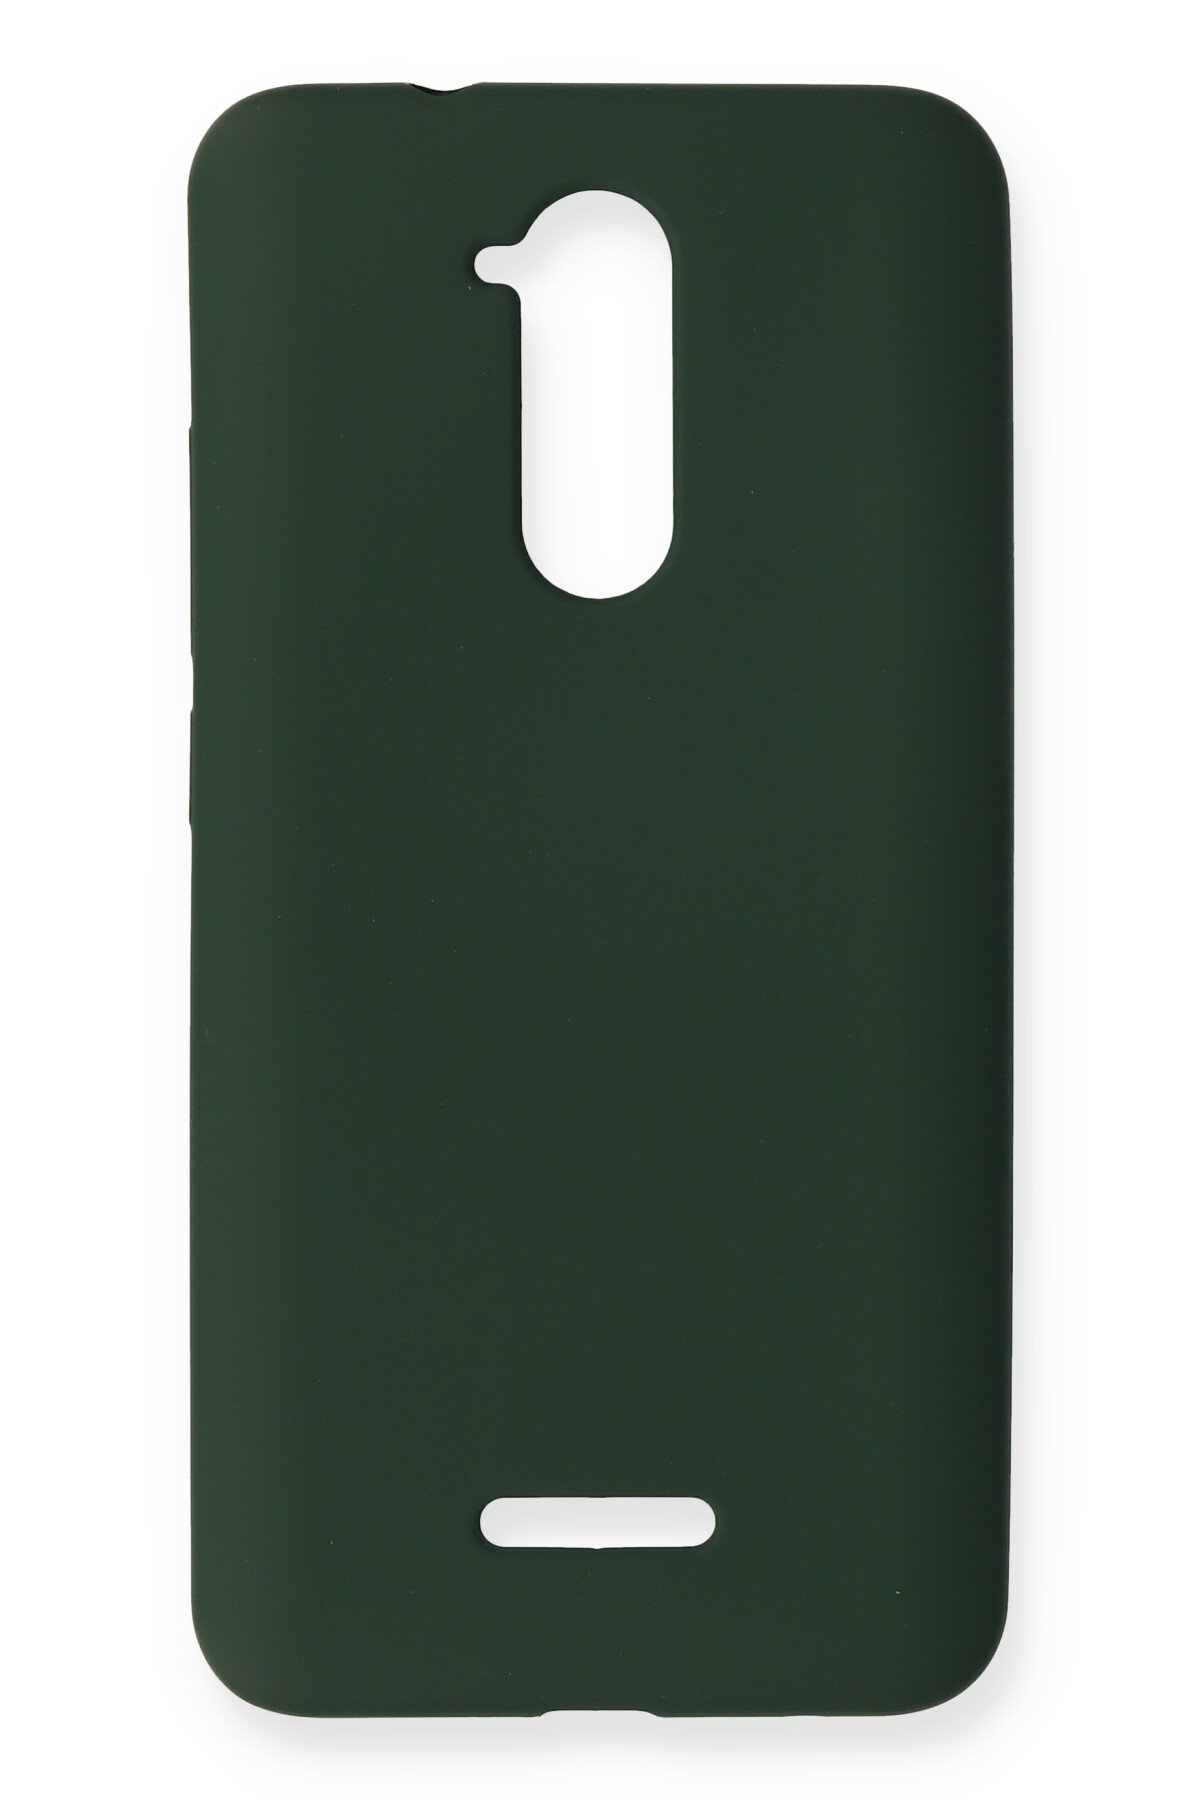 NewFace Newface Casper Via M3 Kılıf Premium Rubber Silikon - Koyu Yeşil